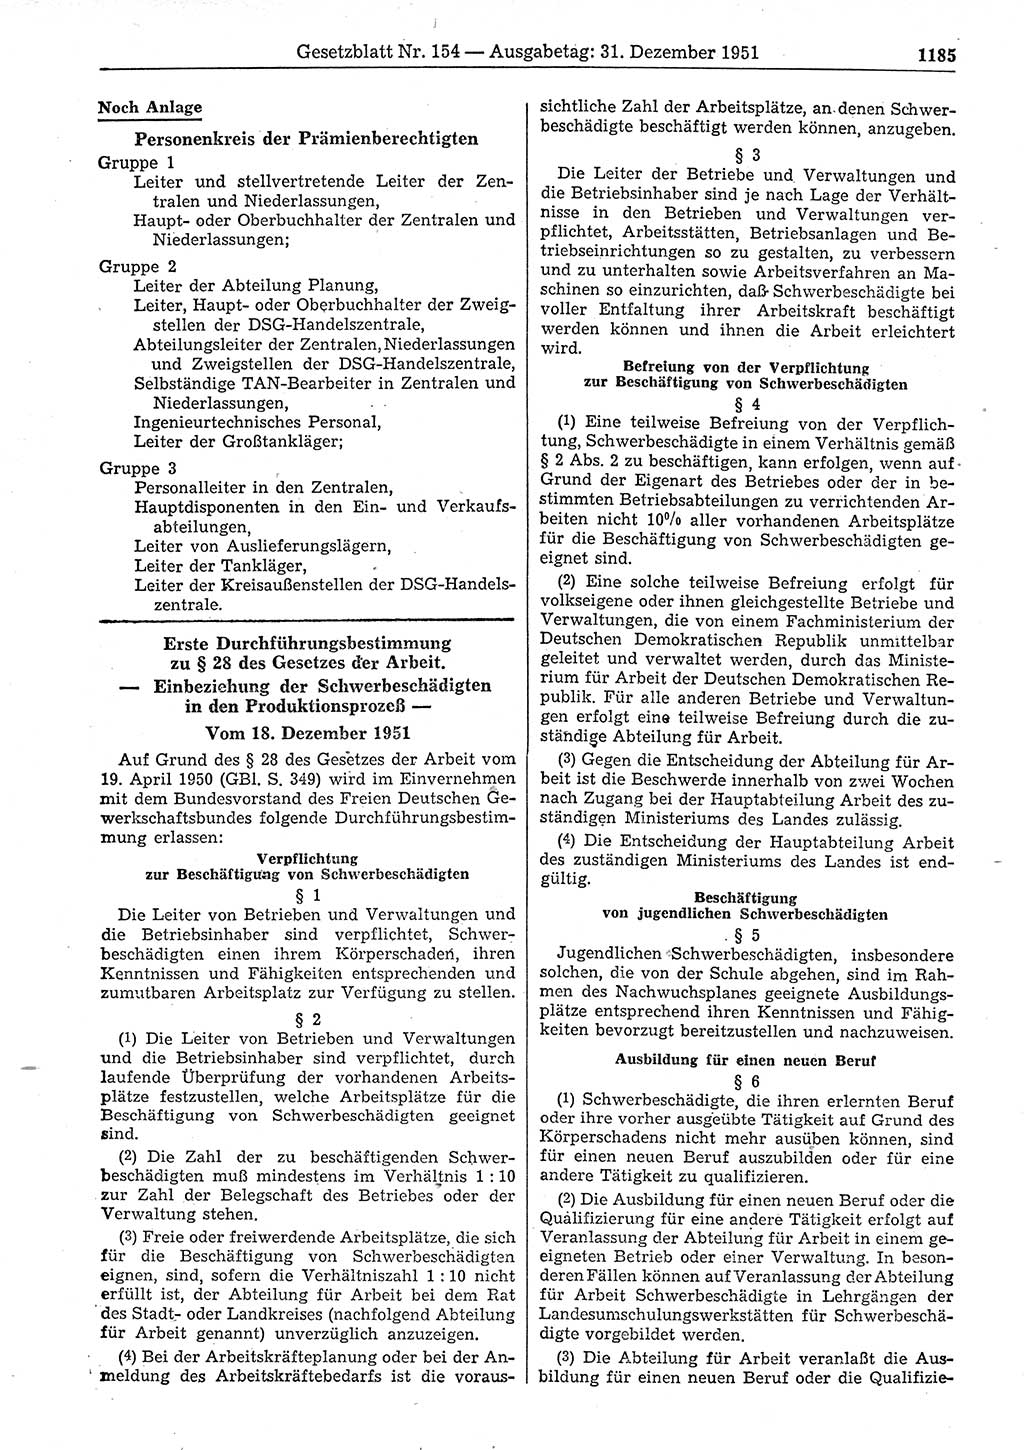 Gesetzblatt (GBl.) der Deutschen Demokratischen Republik (DDR) 1951, Seite 1185 (GBl. DDR 1951, S. 1185)